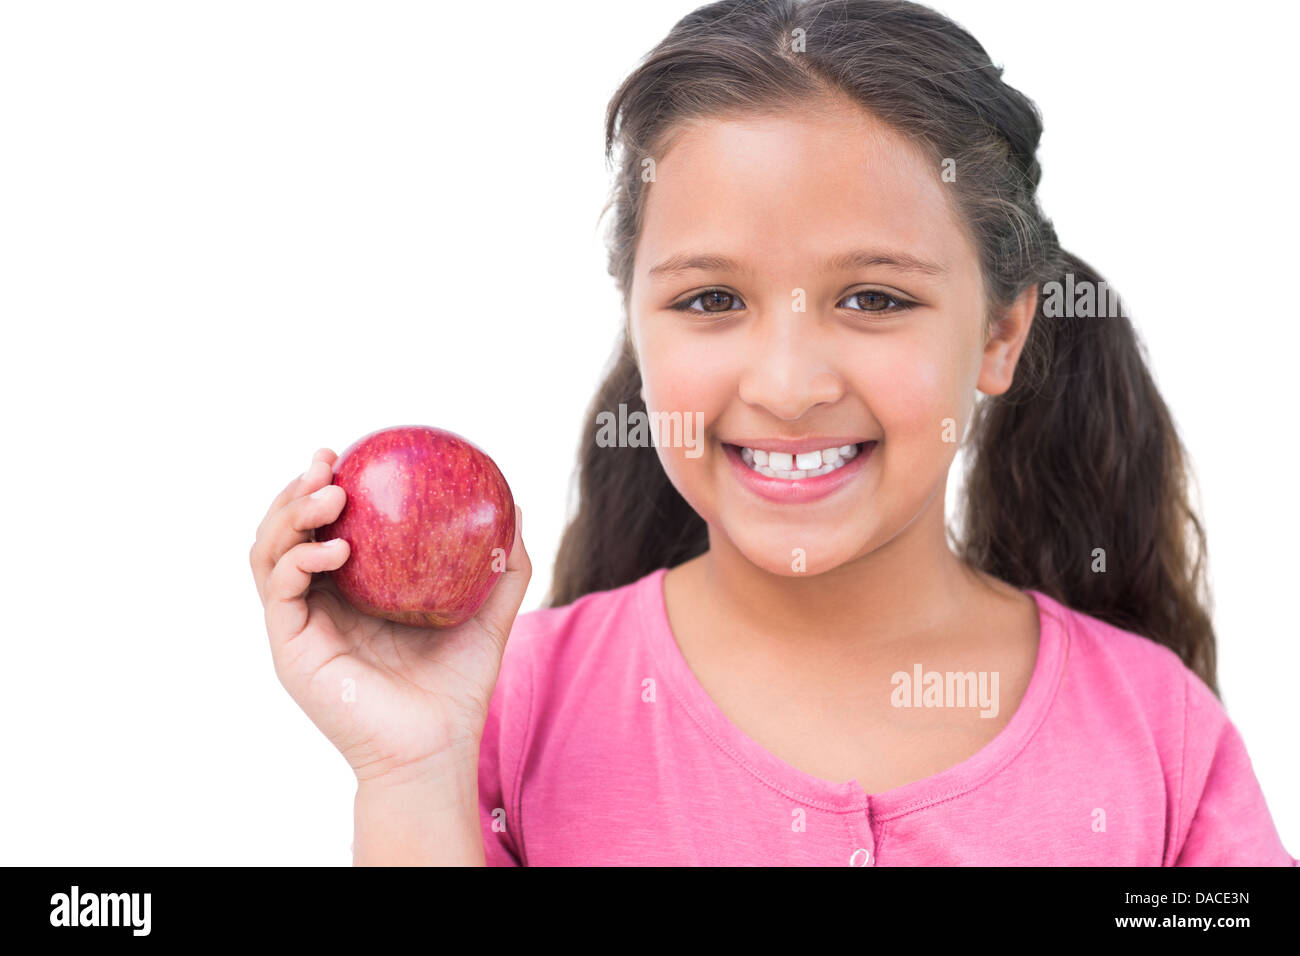 Little girl holding apple in her hand Stock Photo